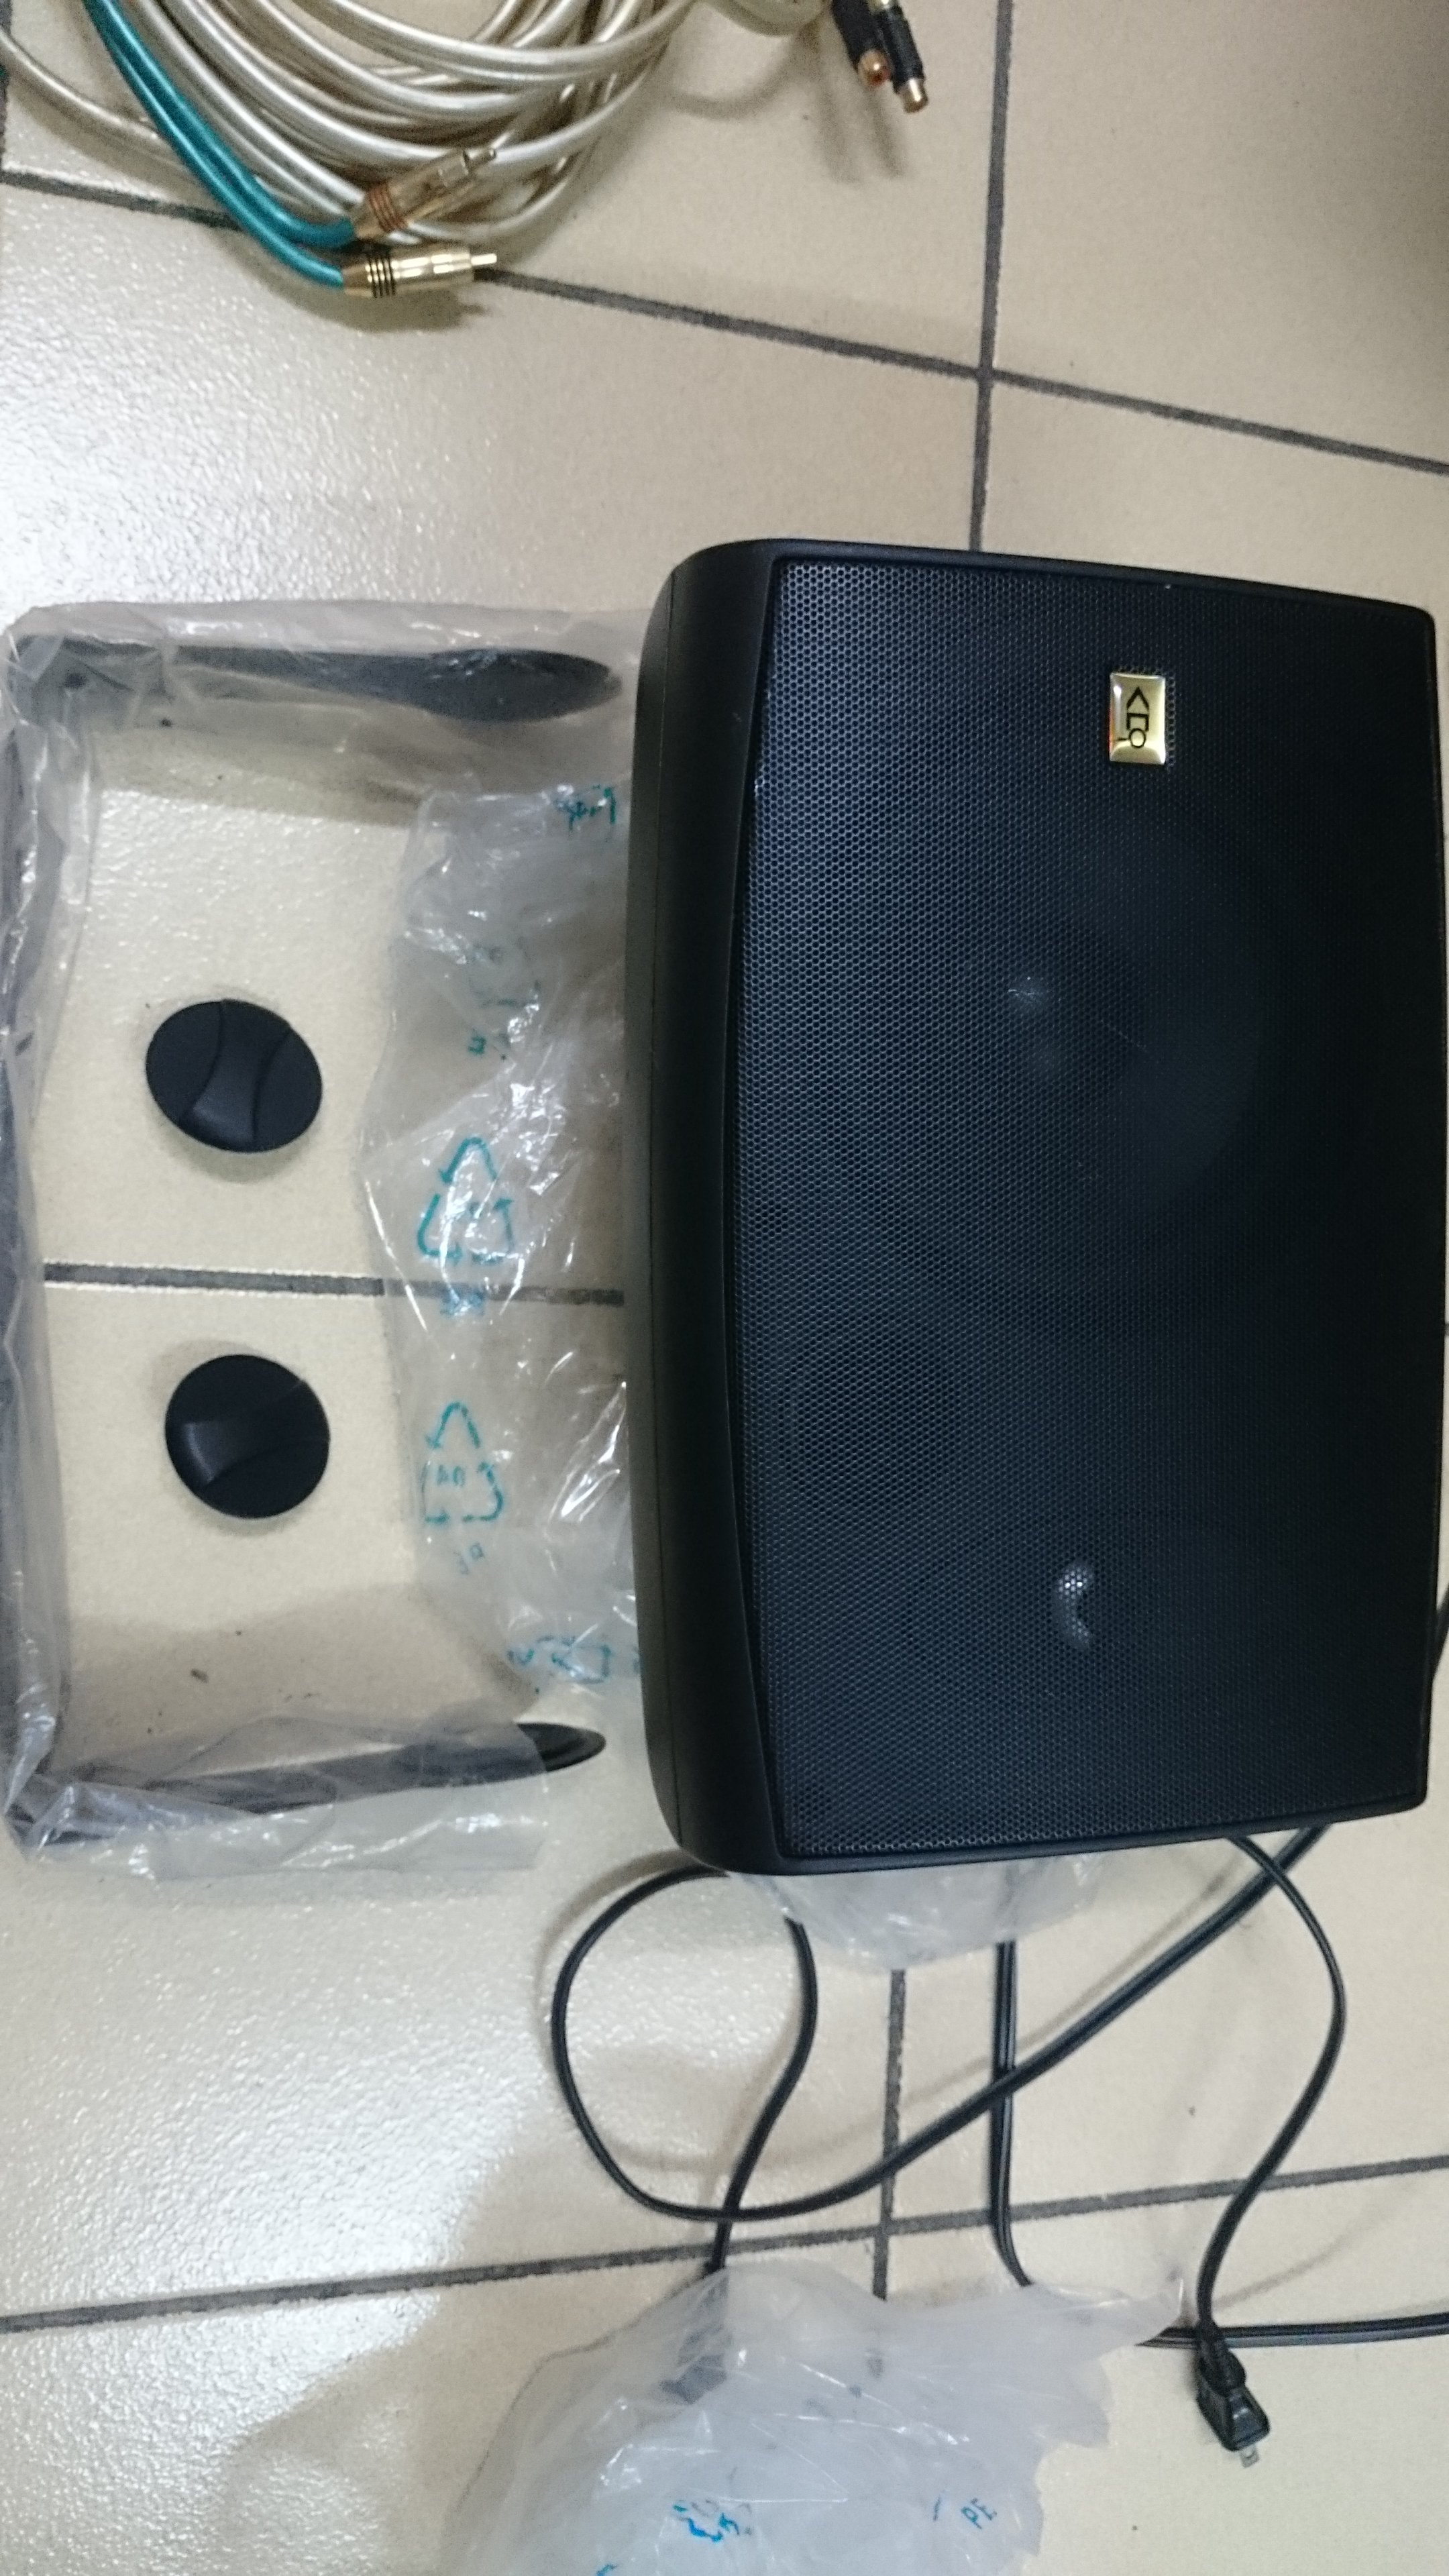 tannoy arena speaker system” タンノイ  アリーナ5.1chスピーカーシステムの2本（デスクットプスピーカー運用として如何ですか？）